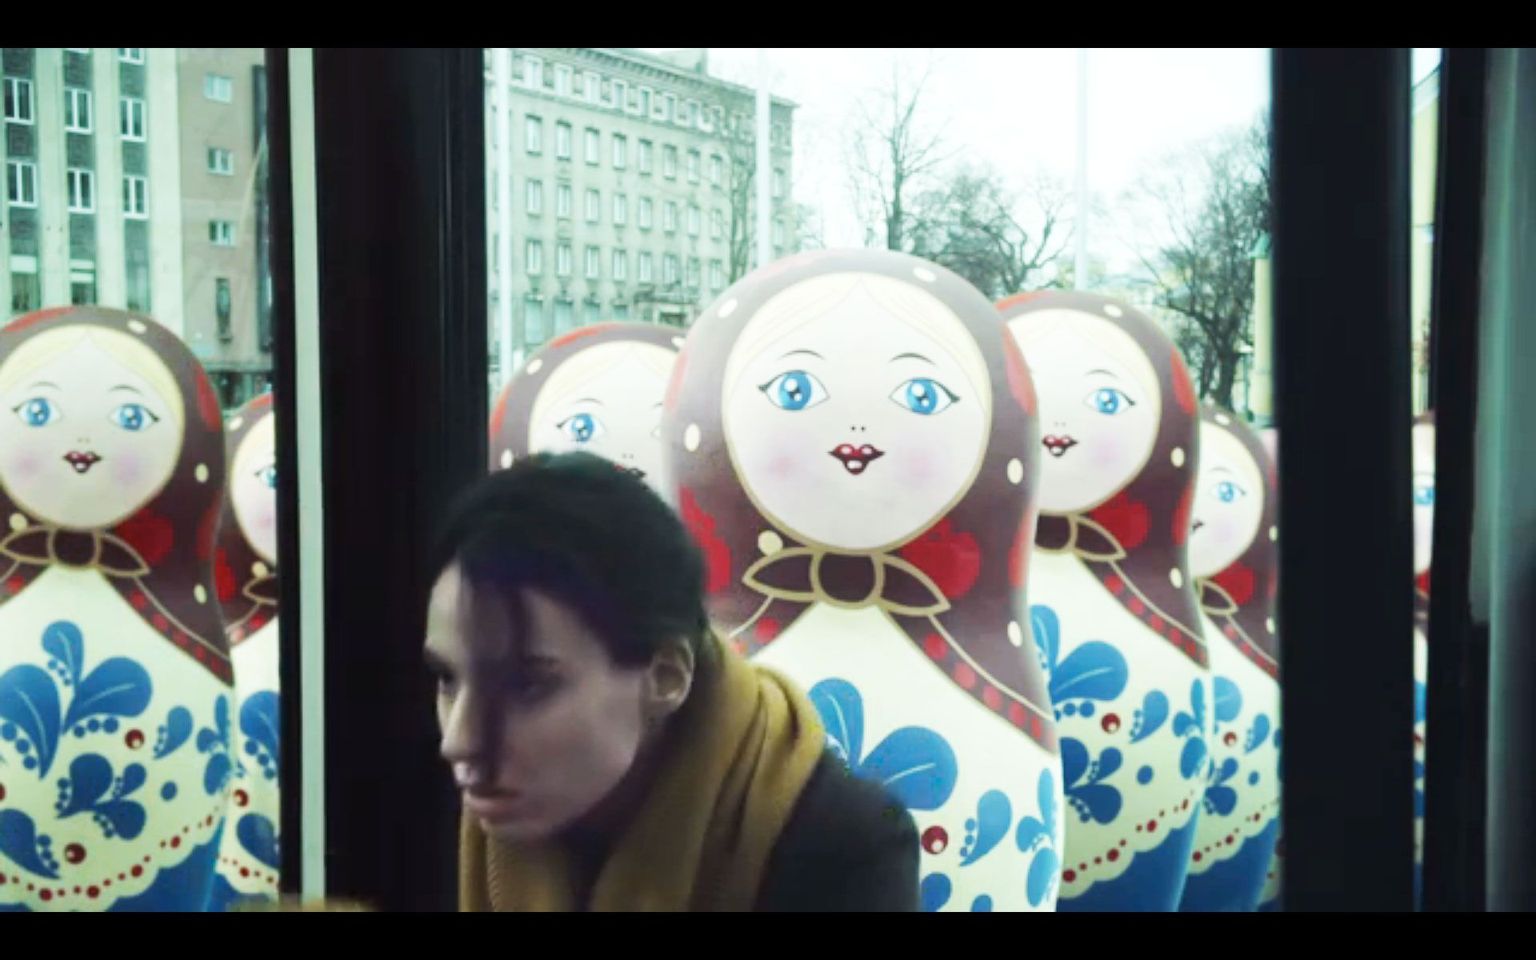 EASi kampaania videoklippides kujutati vene turiste stereotüüpselt matrjoškadena, nüüdseks on klipid kustutatud.